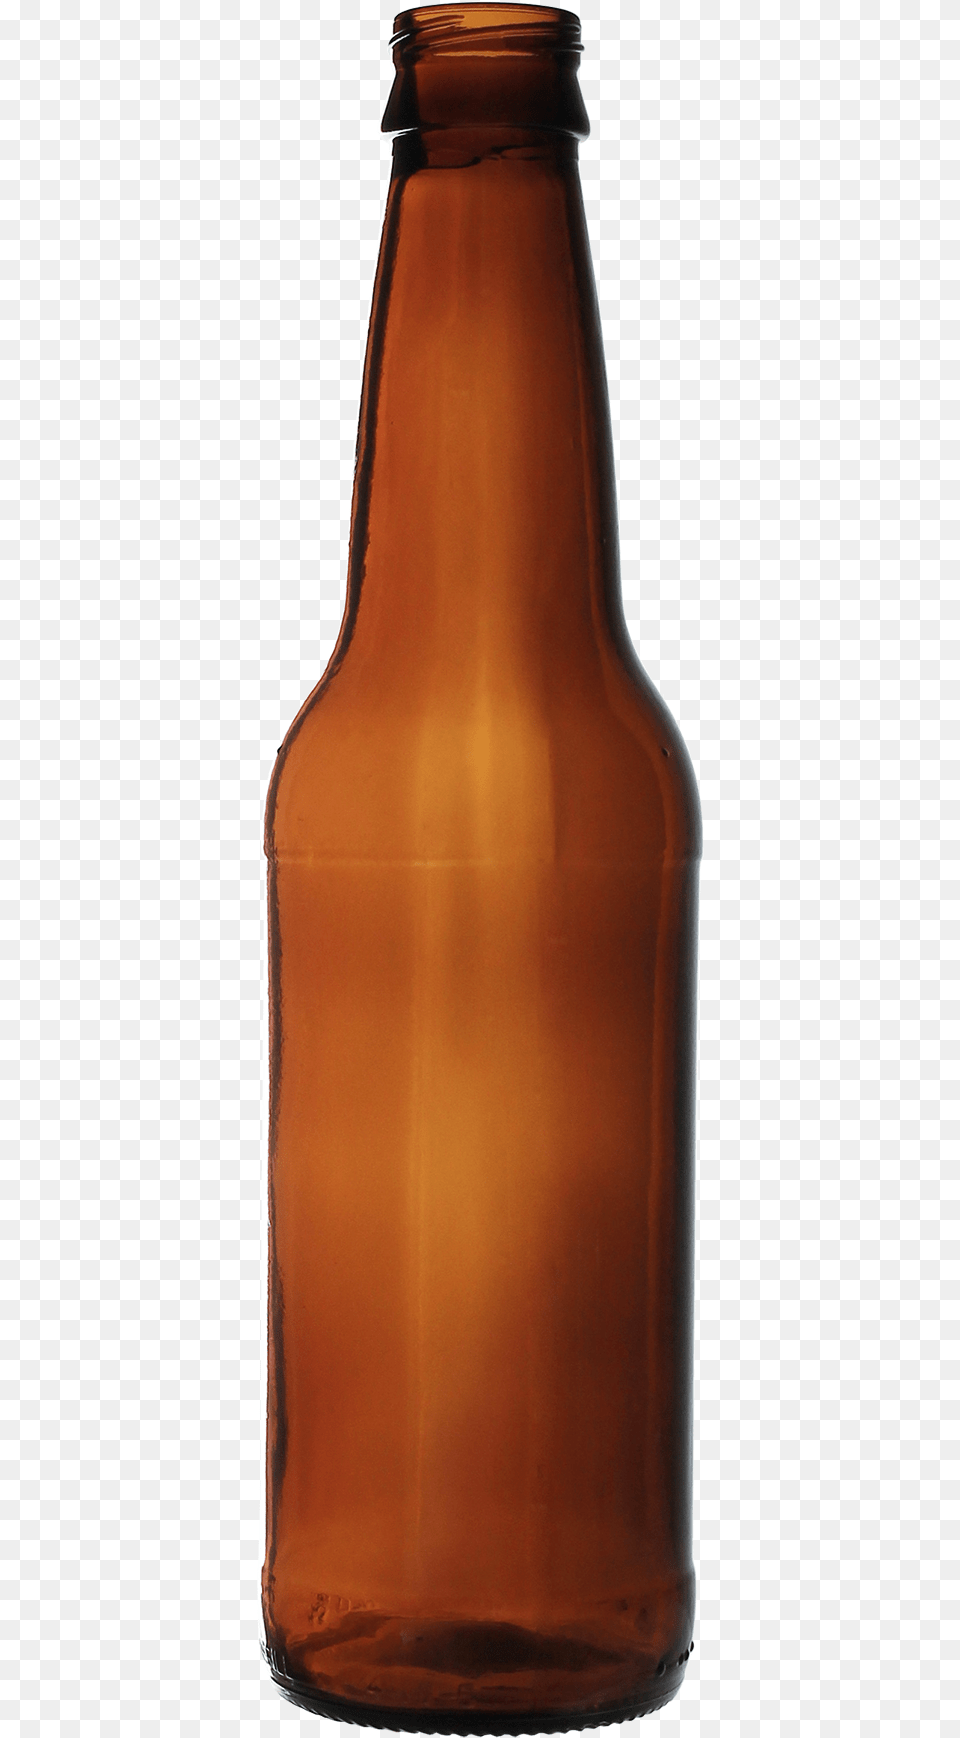 Beer Bottle Open Beer Bottle, Alcohol, Beer Bottle, Beverage, Liquor Free Transparent Png